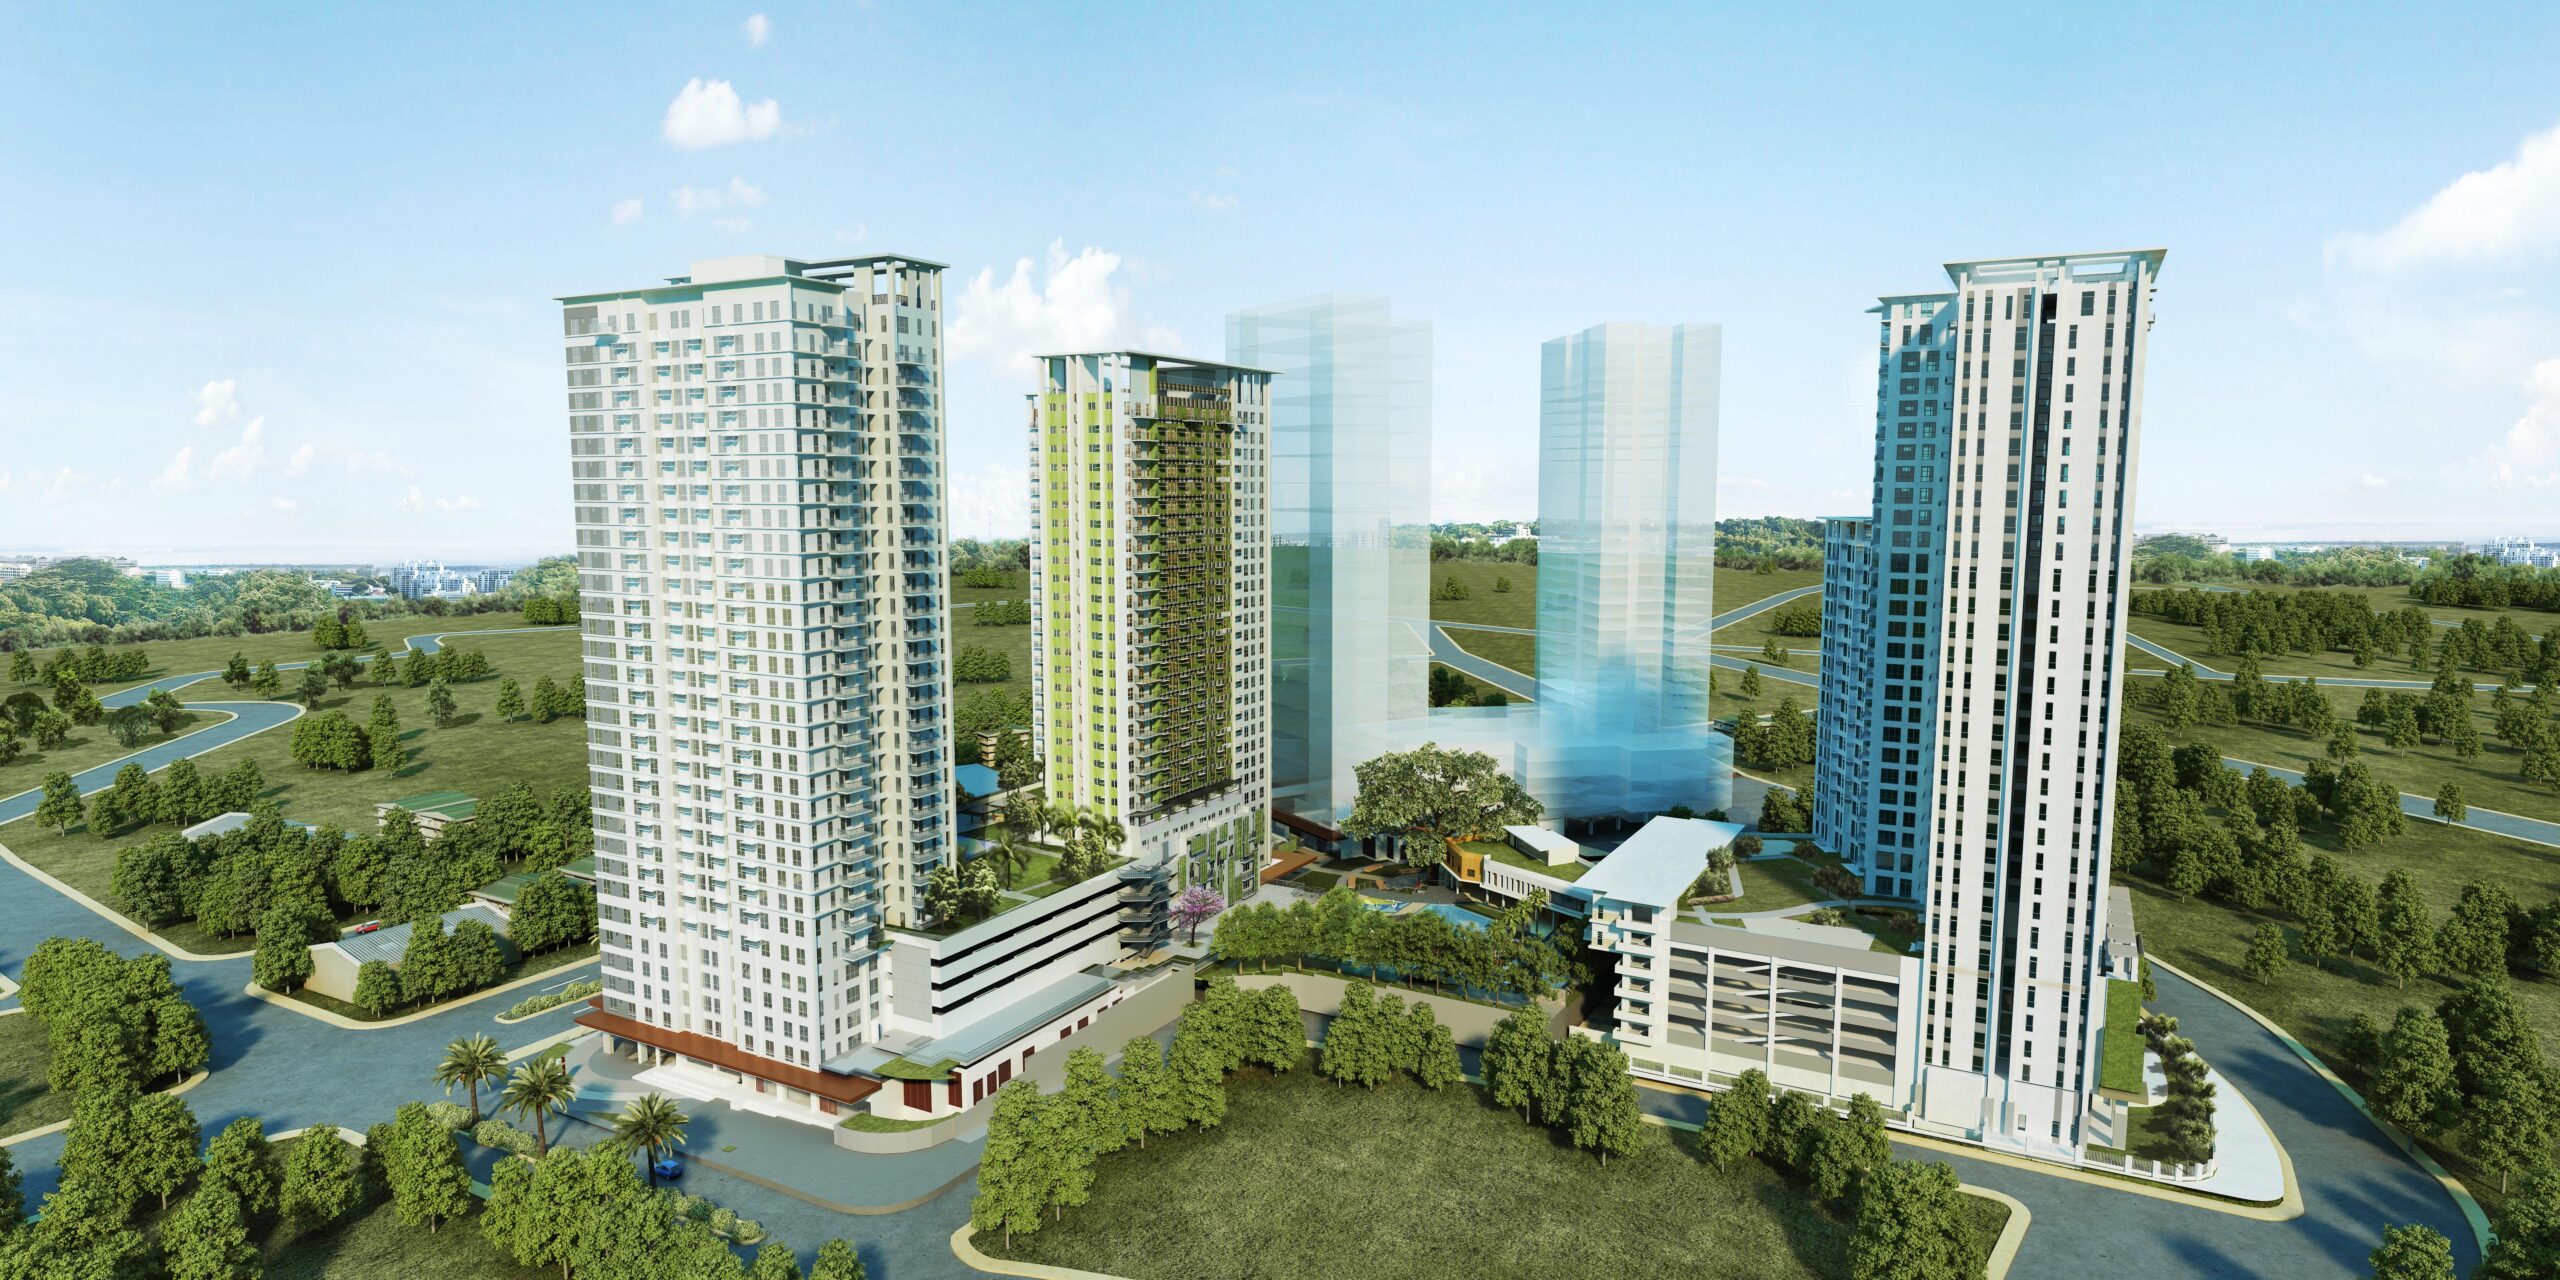 Alveo melihat hasil penjualan P11B dari pengembangan properti Cebu